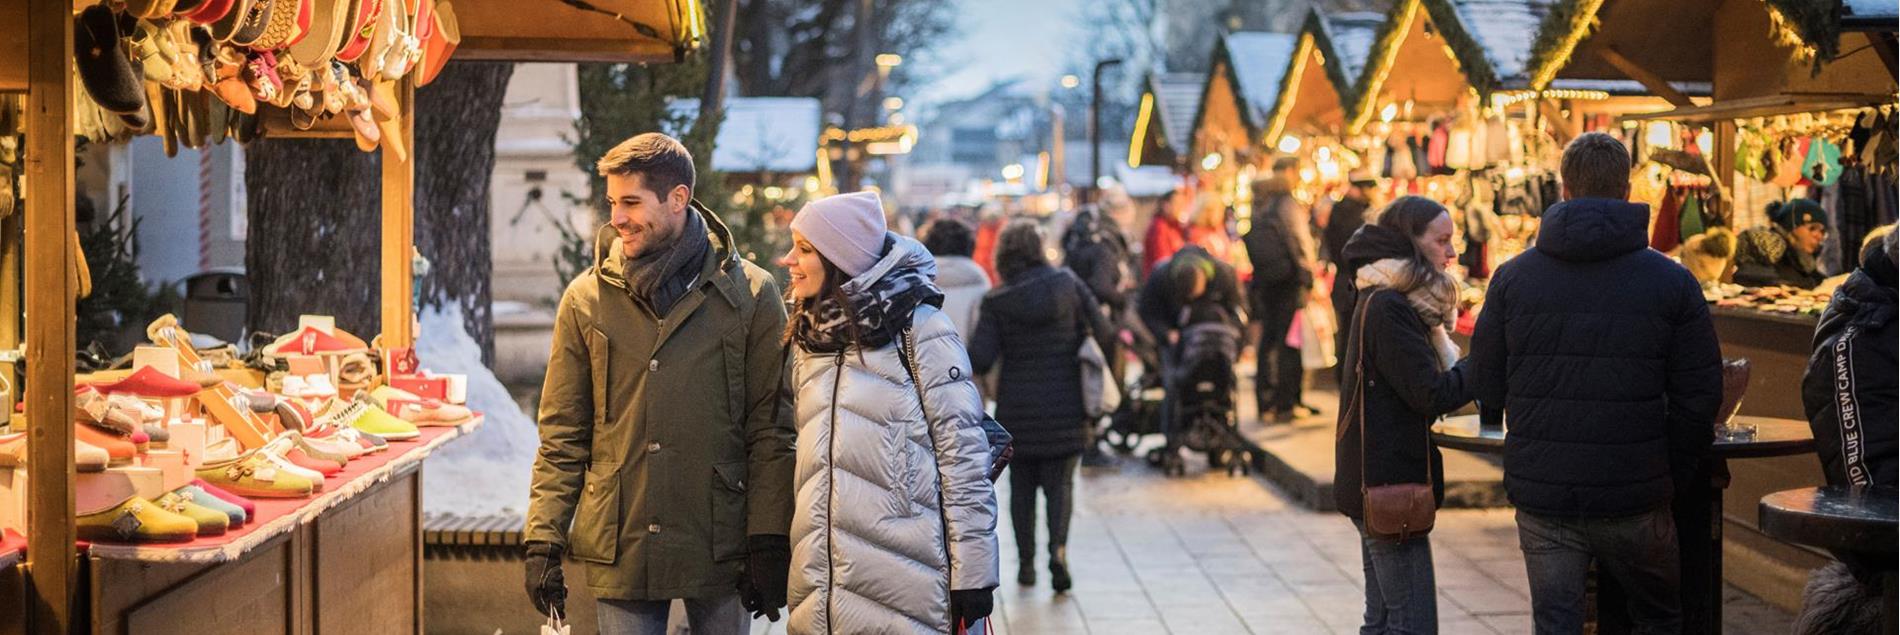 tv-bruneck-weihnachtsmarkt-winter-ckm-4-harald-wisthaler